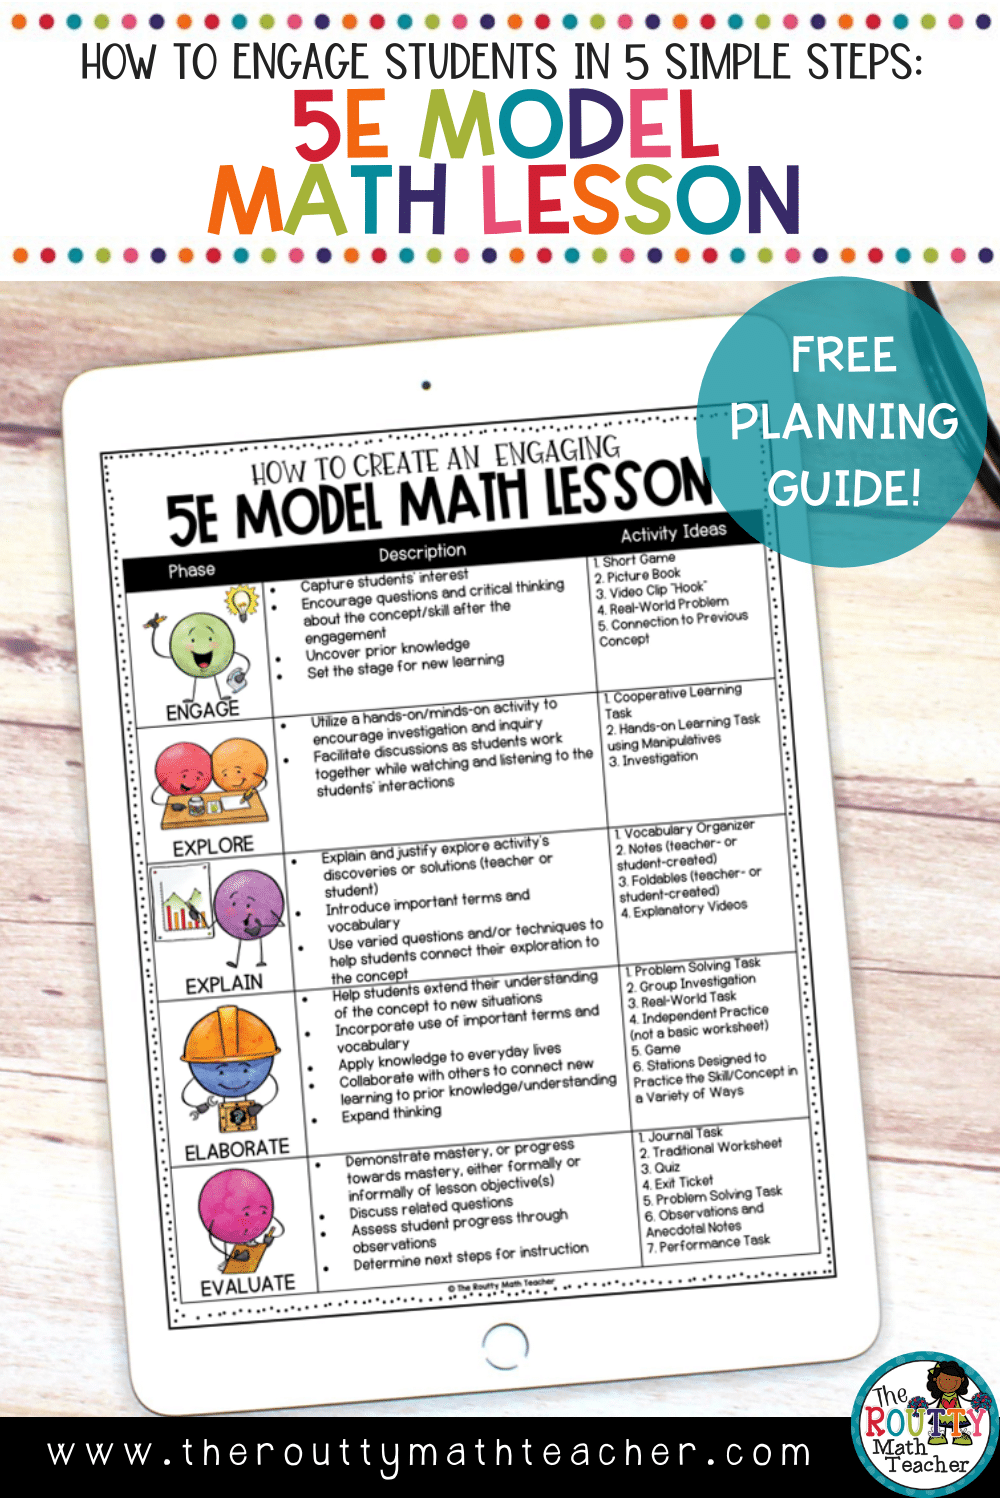 5E Model Math Lesson Plan